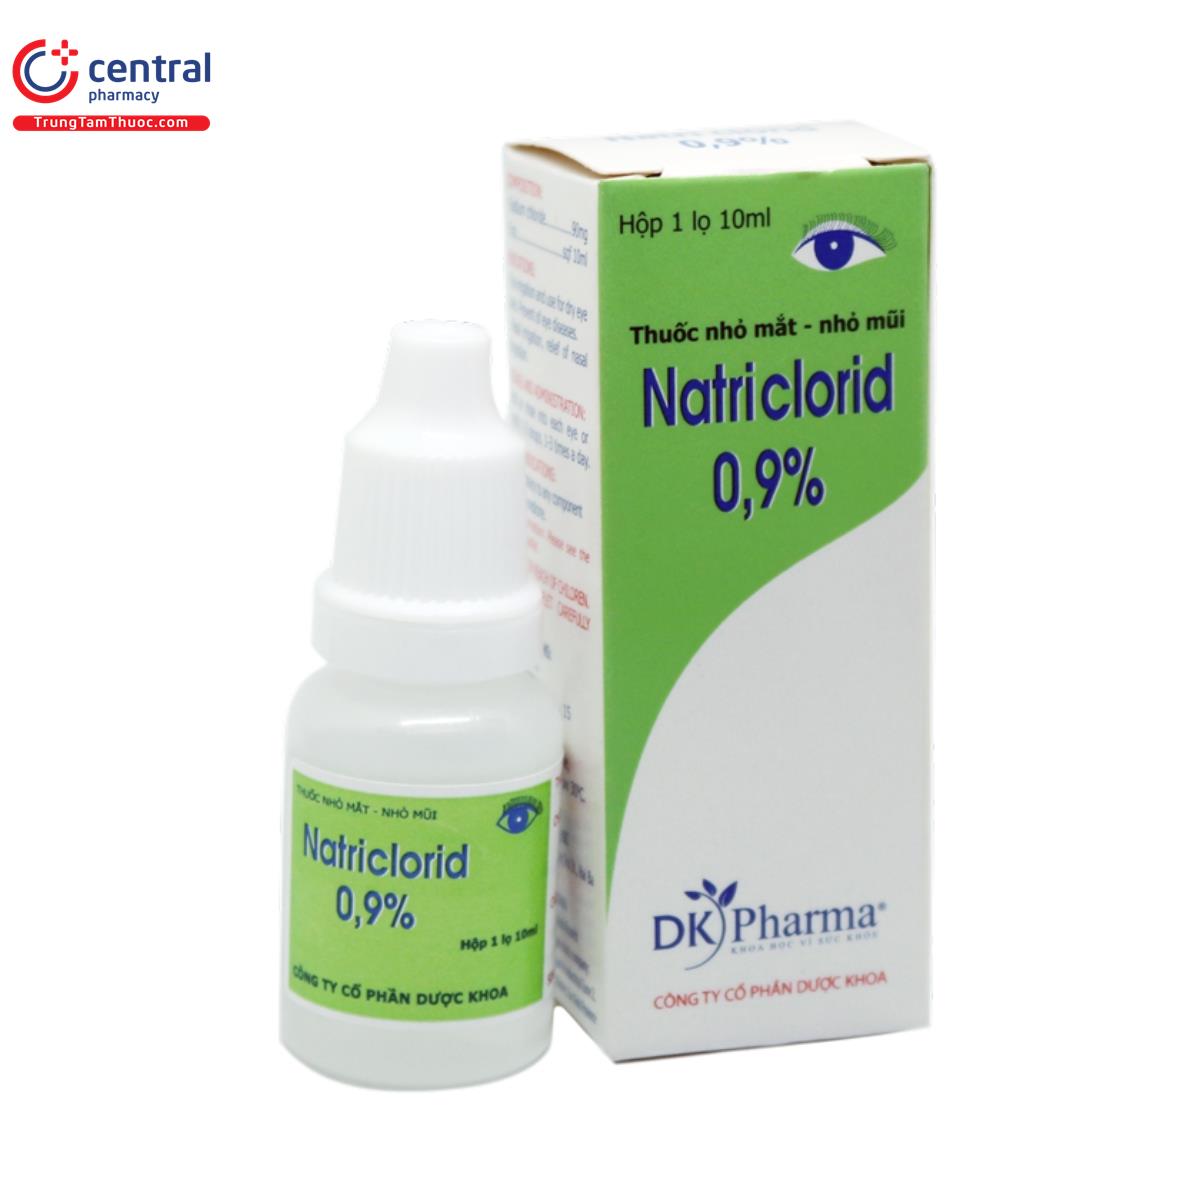 natri clorid 09 dk pharma 1 M4152